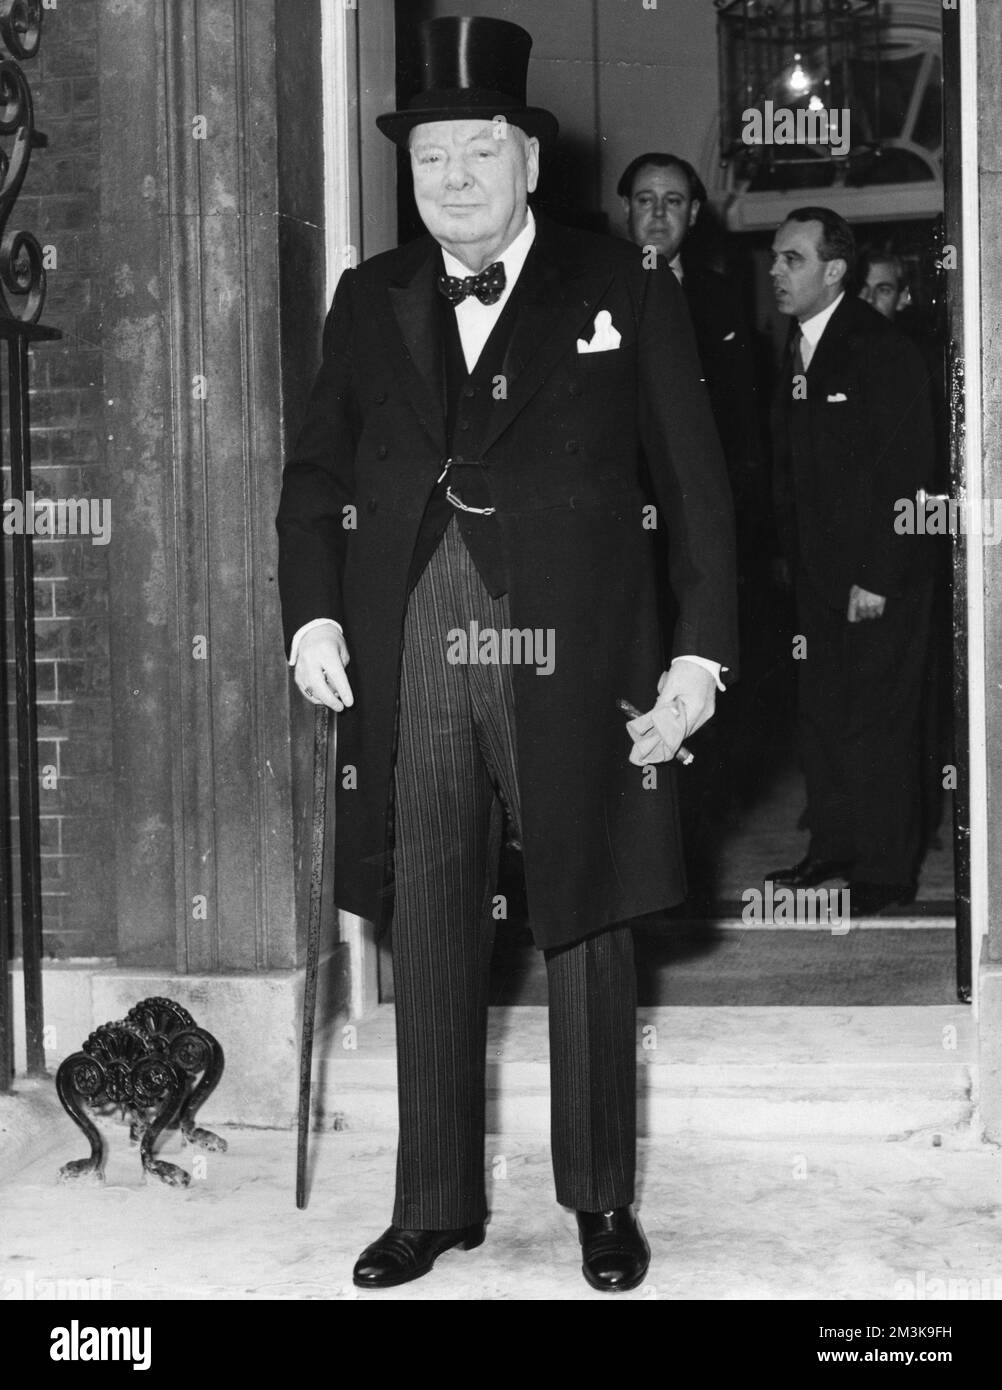 Sir Winston Leonard Spencer Churchill 1874 1965. Britischer Politiker und Premierminister auf den Stufen der Downing Street 10, London, trägt einen Hut, während er sich auf den Buckingham Palace vorbereitet, um seine Kündigung abzugeben Datum: 5.. April 1955 Stockfoto